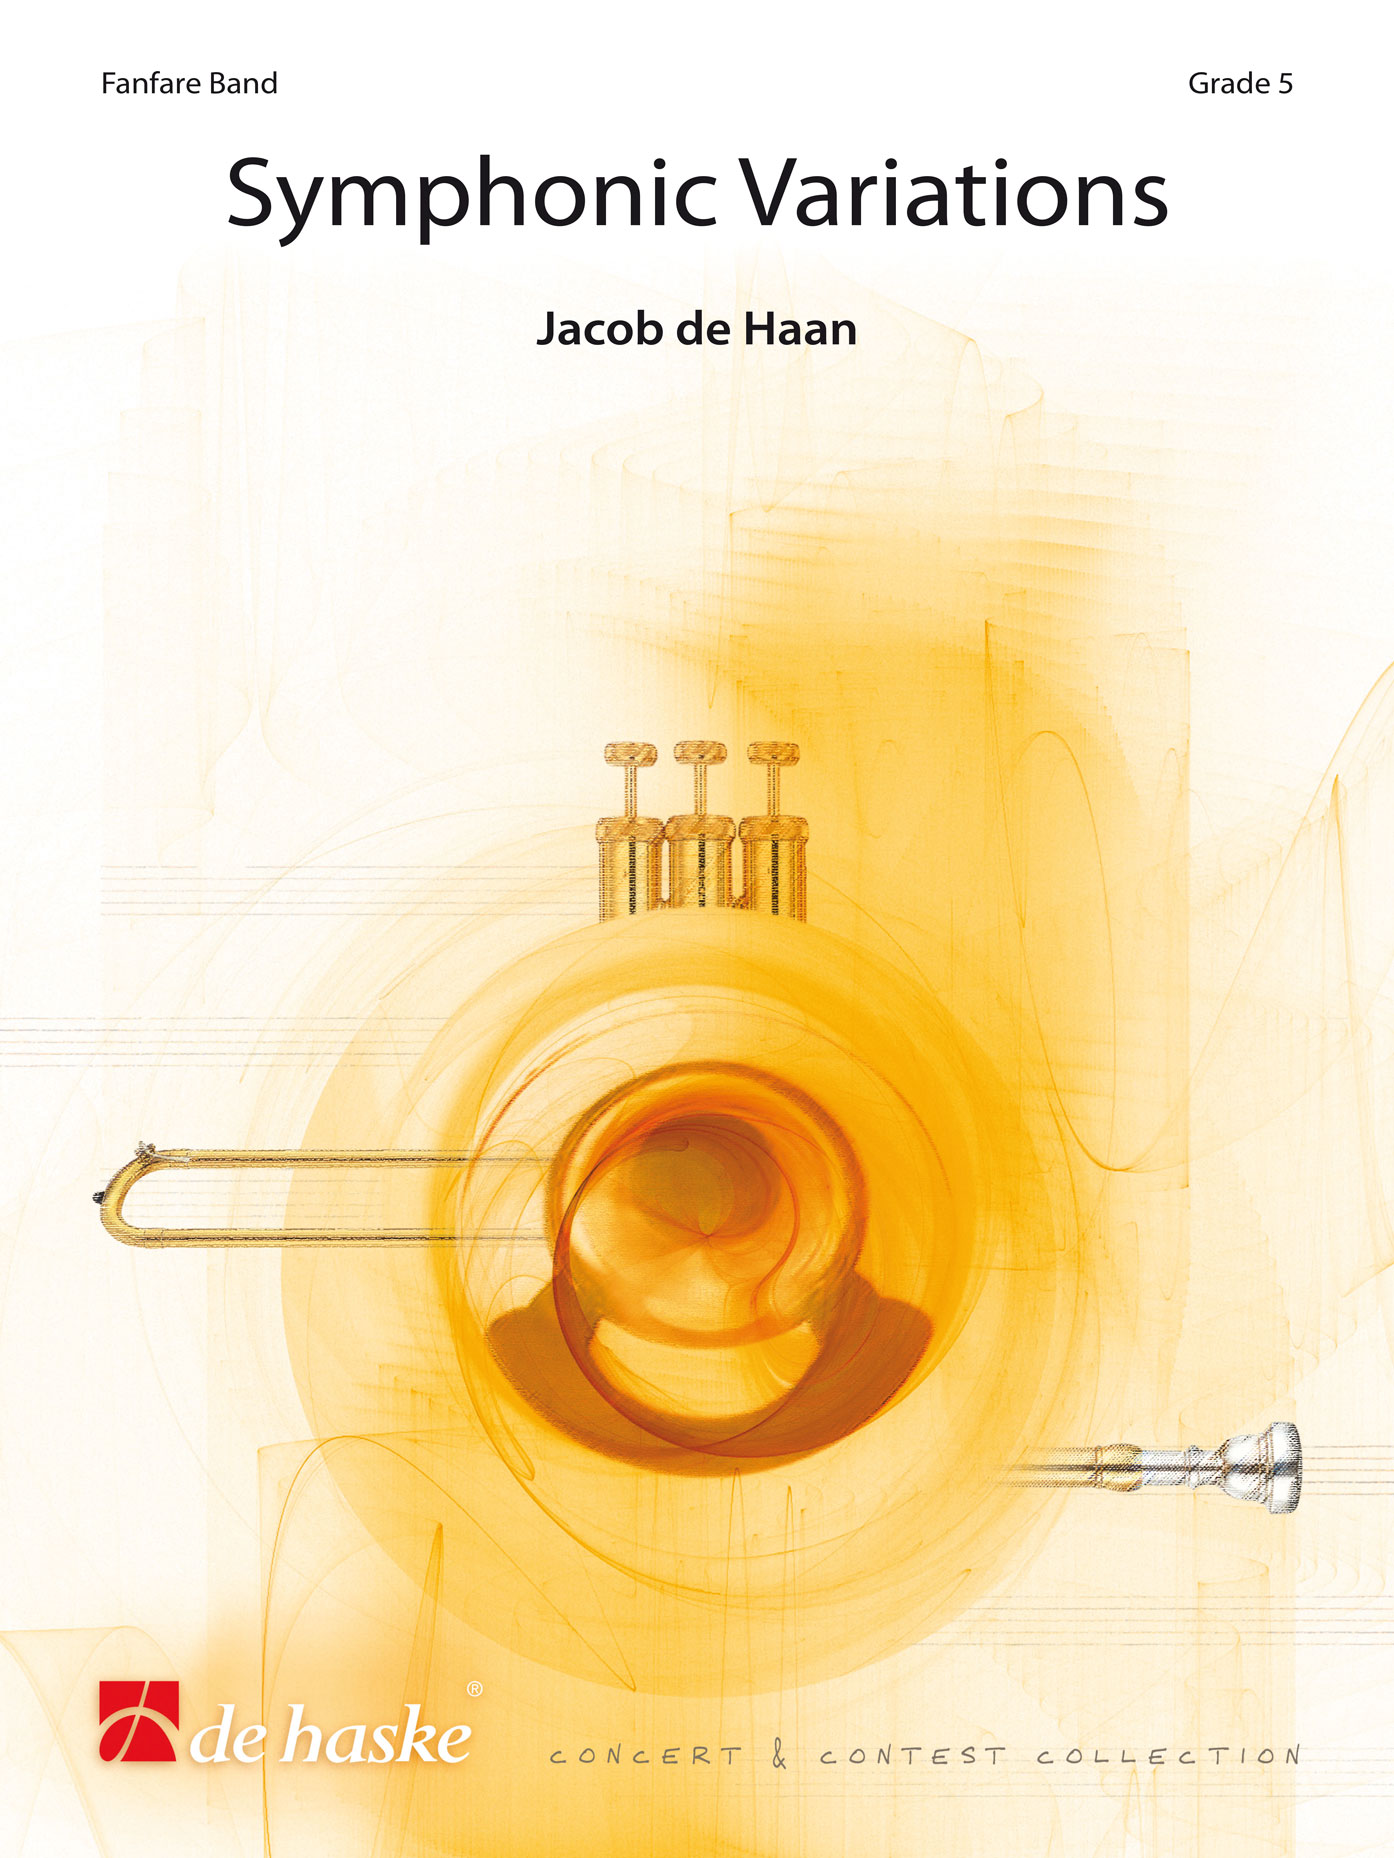 Jacob de Haan: Symphonic Variations: Fanfare Band: Score